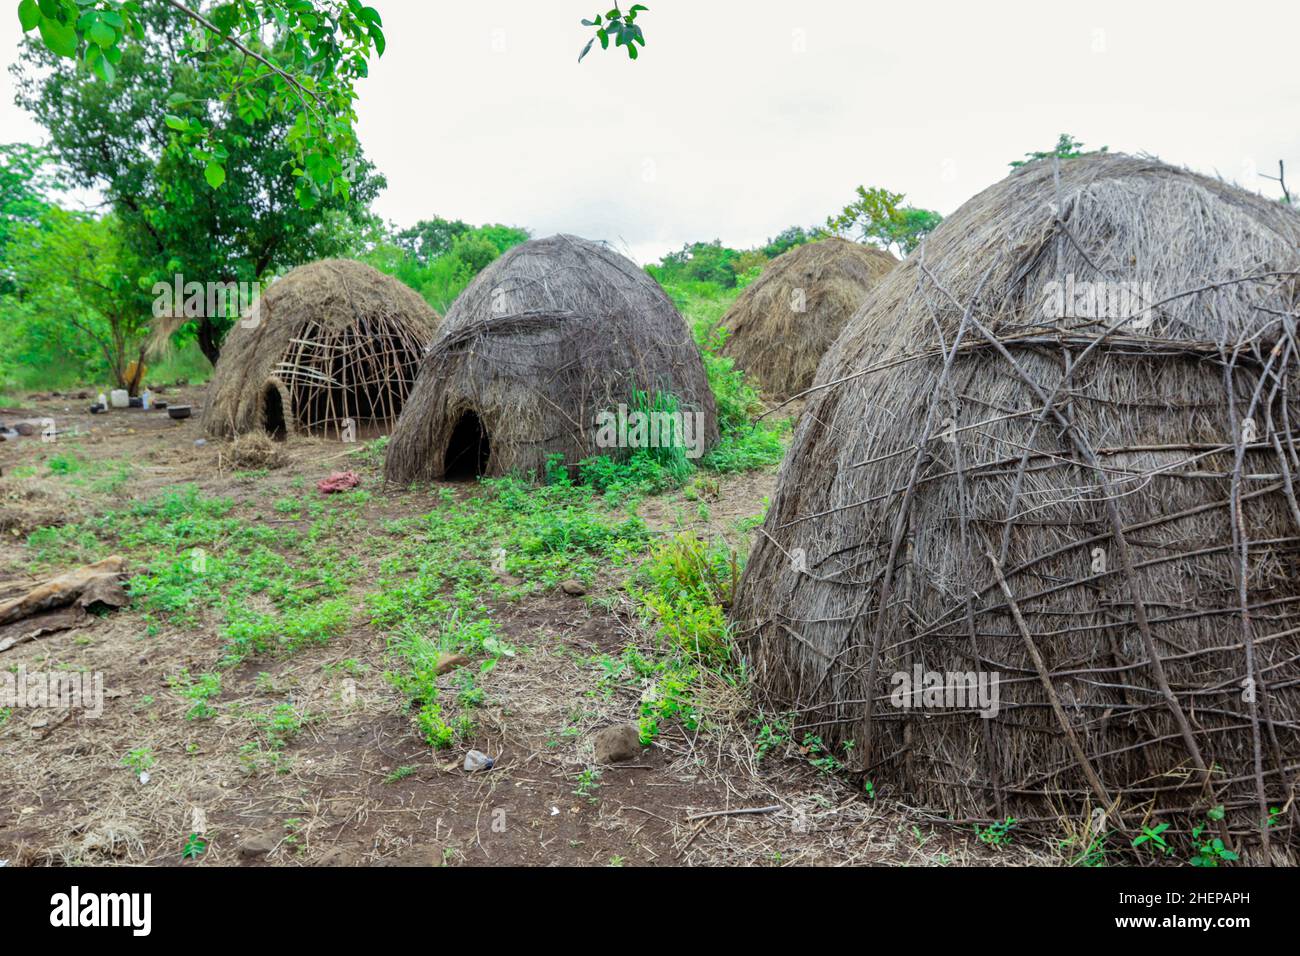 Maisons traditionnelles dans le village de la tribu Mursi, vallée d'Omo, Ethiopie Banque D'Images